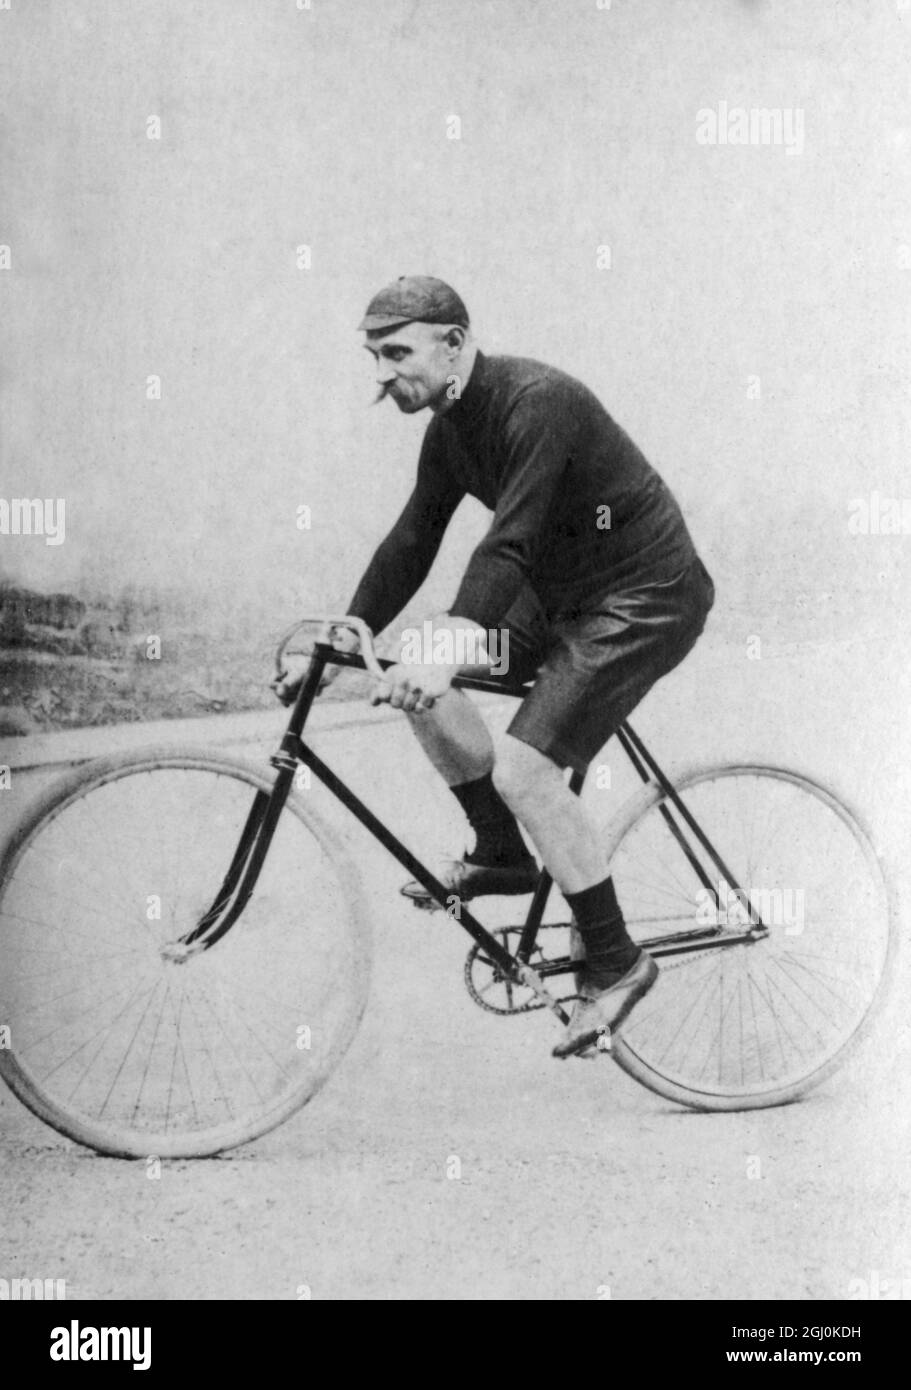 Paul Medinger (geboren 1858 in Paris - gestorben 1895). Champion von Frankreich (1886, 1887, 1888, 1889, 1890, 1891) ©TopFoto Stockfoto